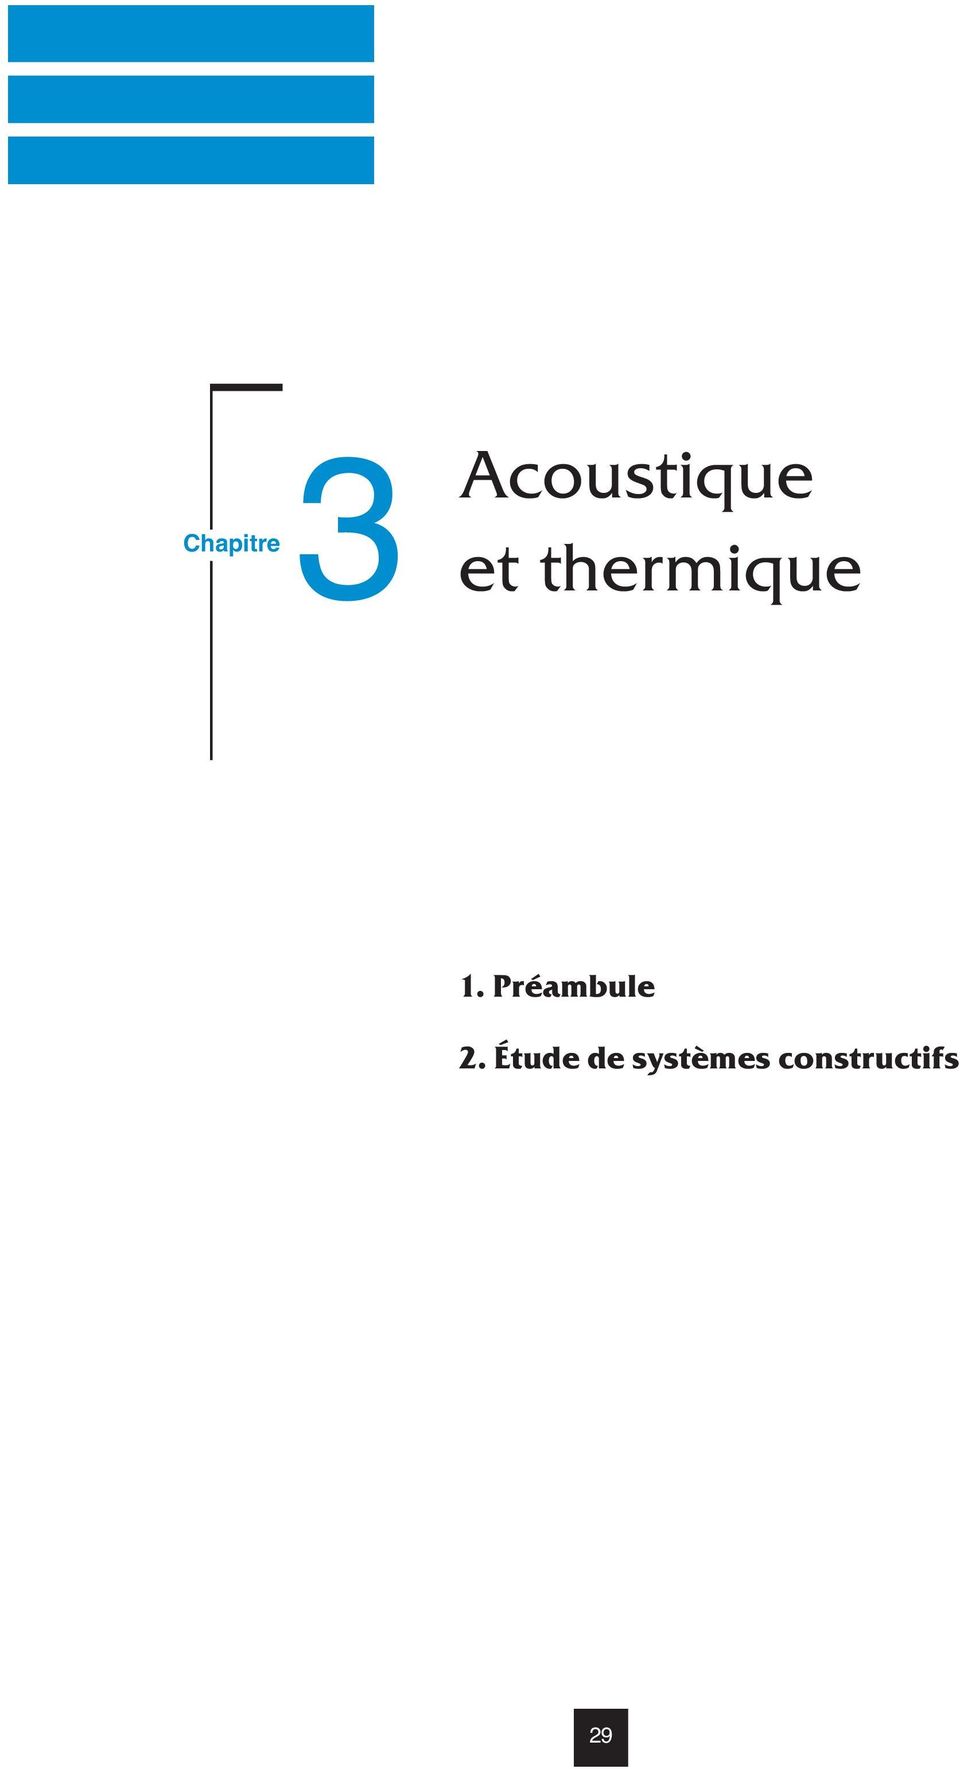 thermique 1.